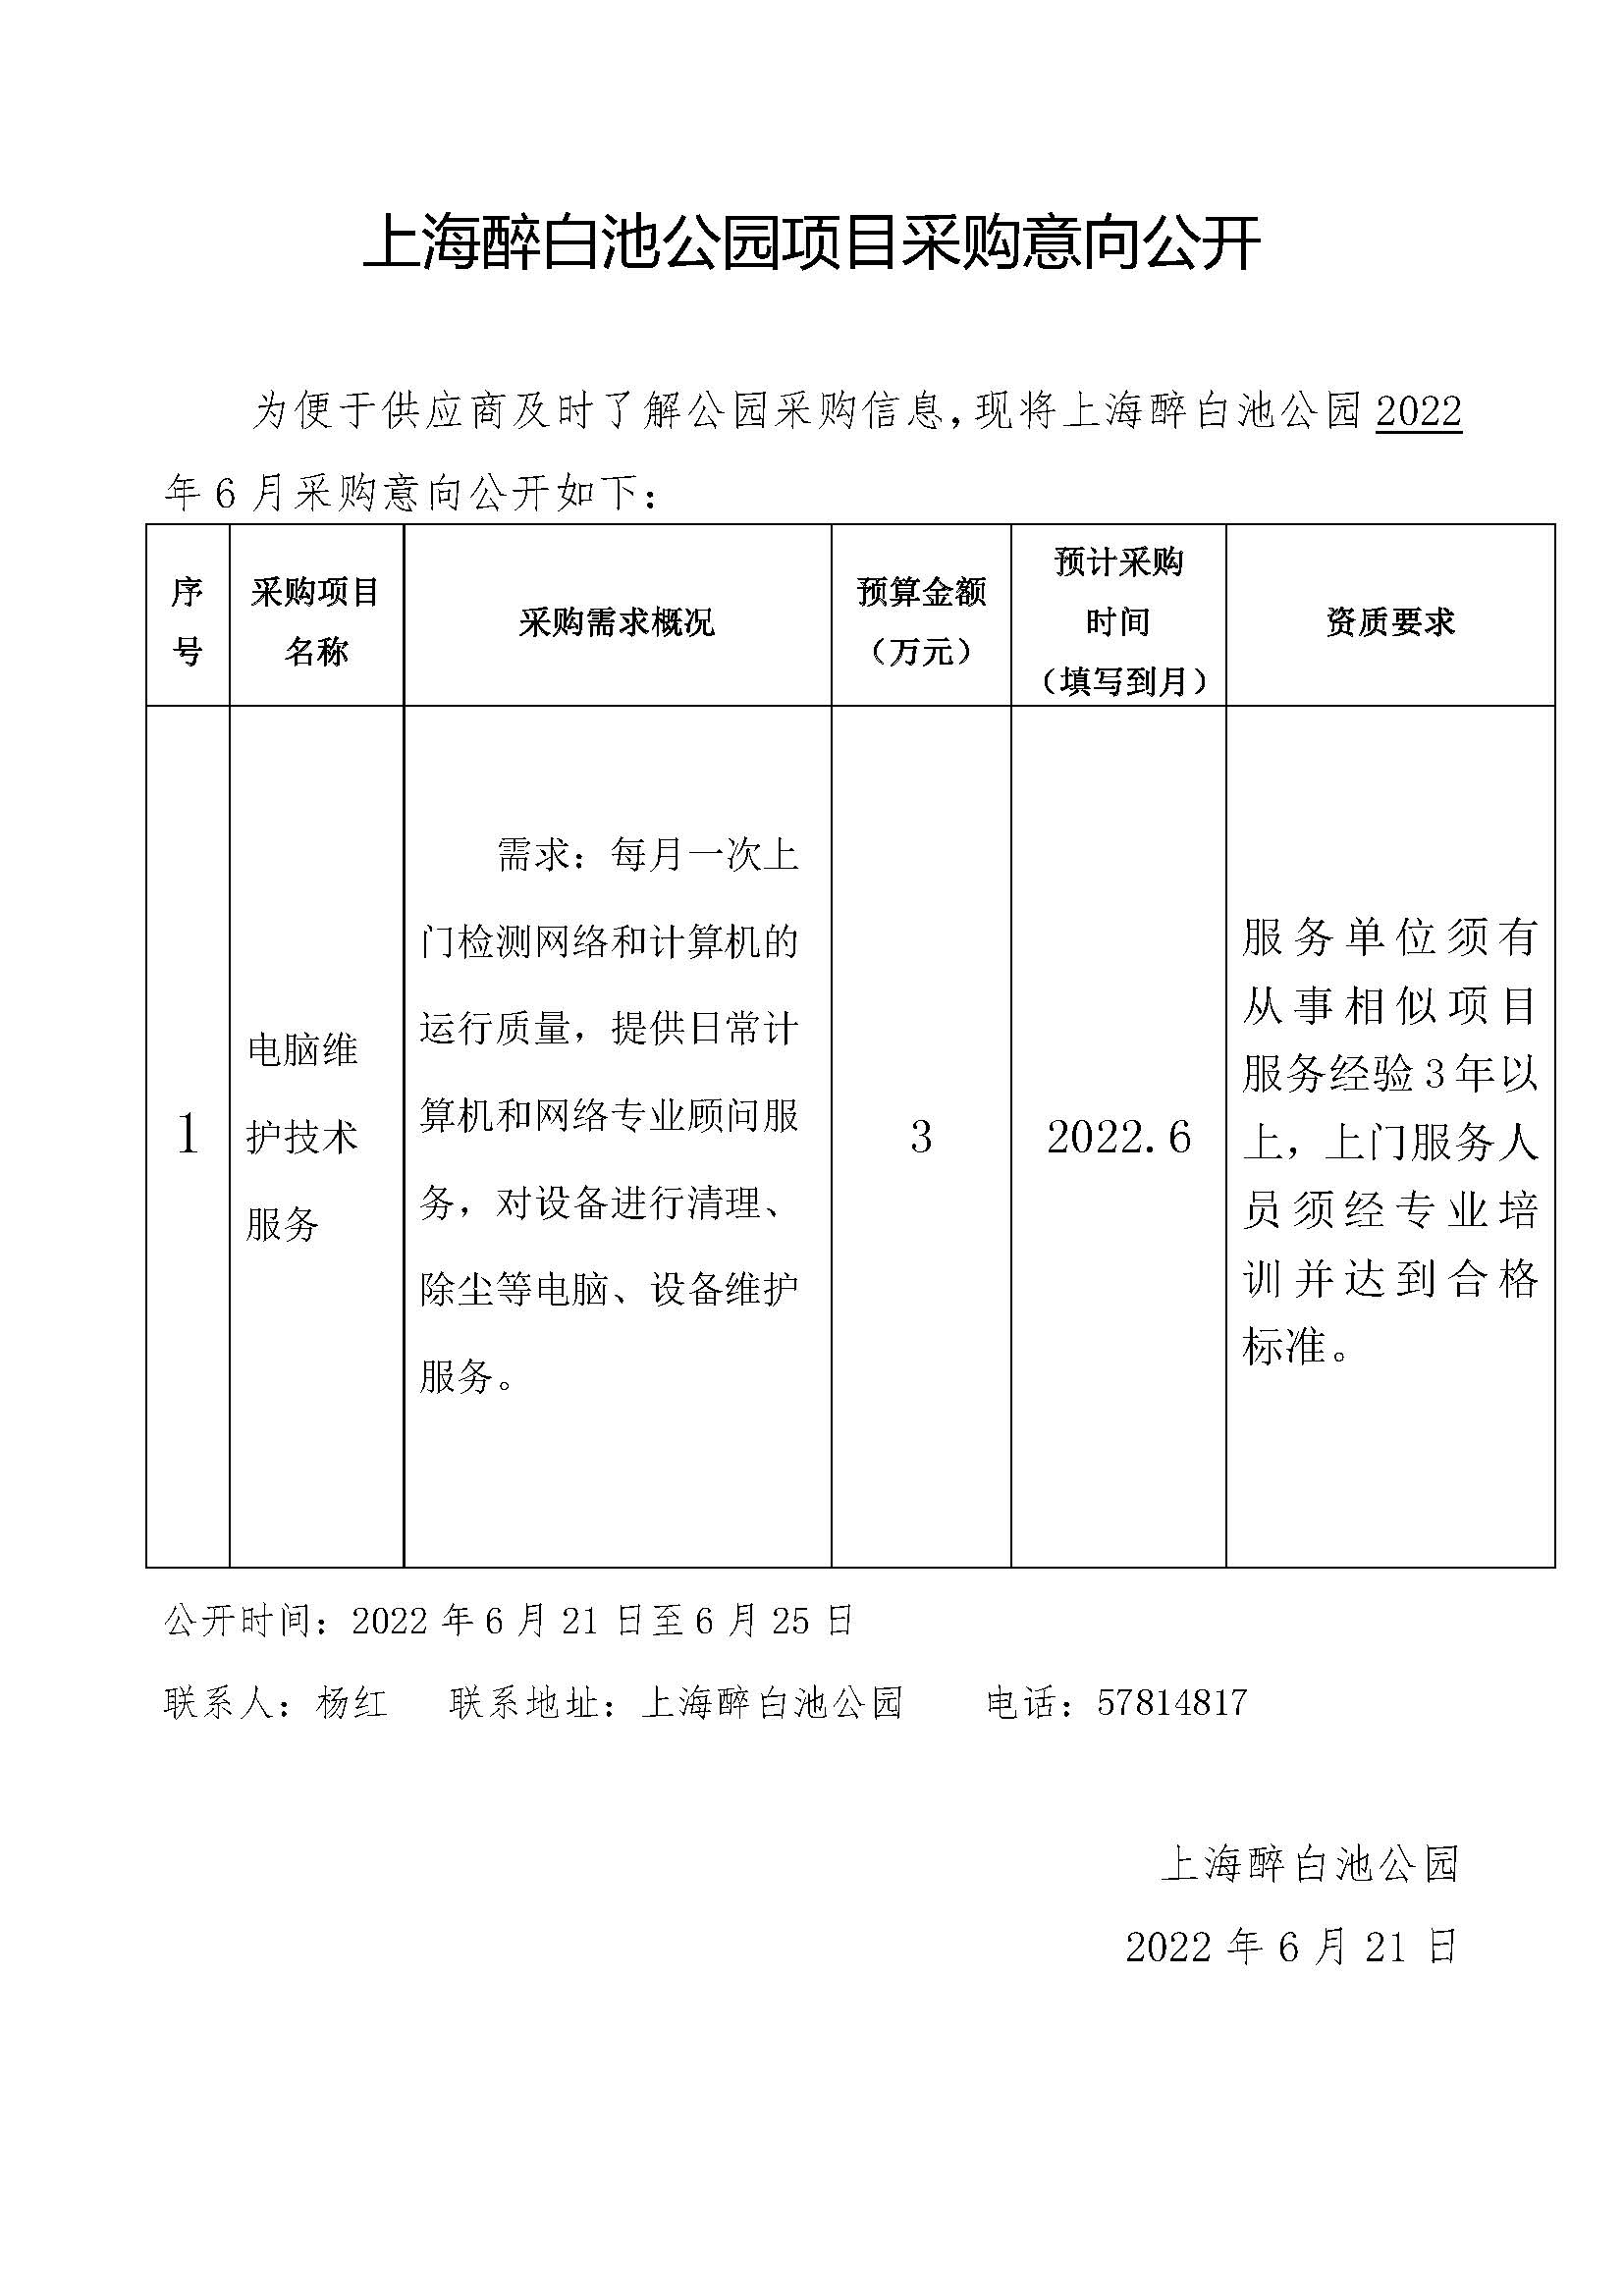 2022.6上海醉白池公园项目采购意向.jpg